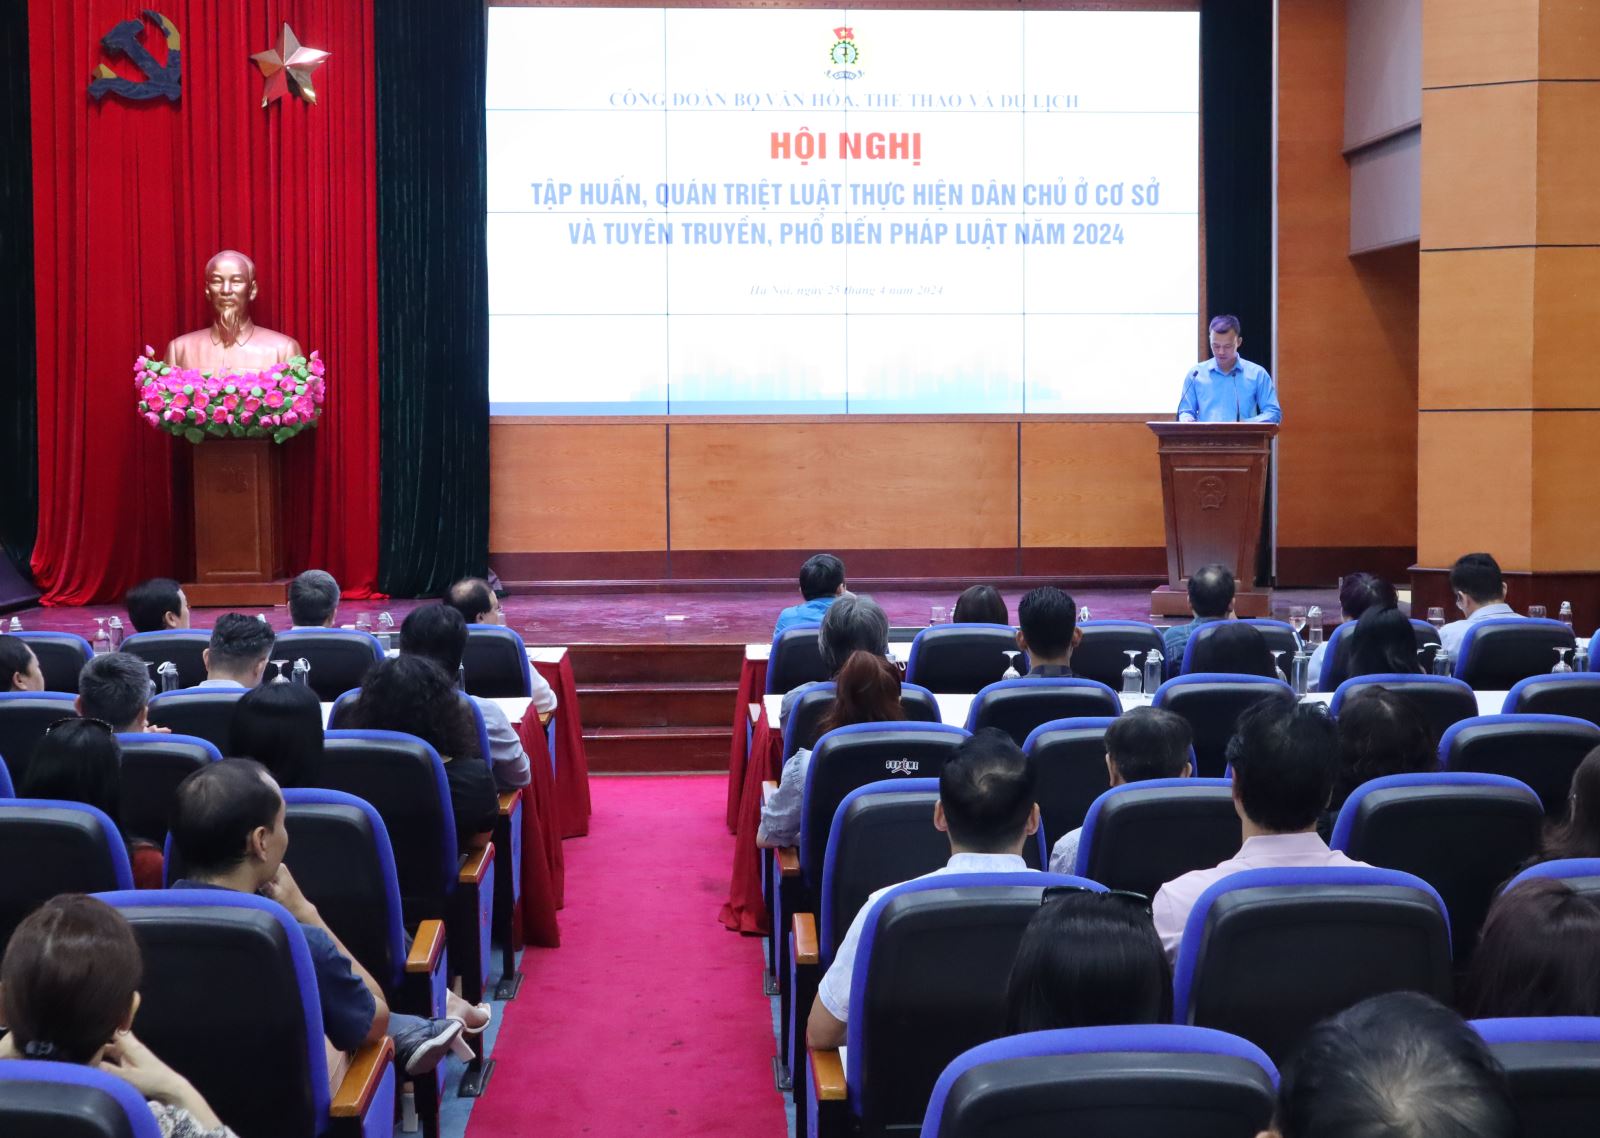 Sáng ngày 25-4-2024, tại Hà Nội, Bộ VHTTDL đã tổ chức Hội nghị tập huấn, quán triệt Luật Thực hiện dân chủ ở cơ sở và tuyên truyền, phổ biến pháp luật năm 2024.